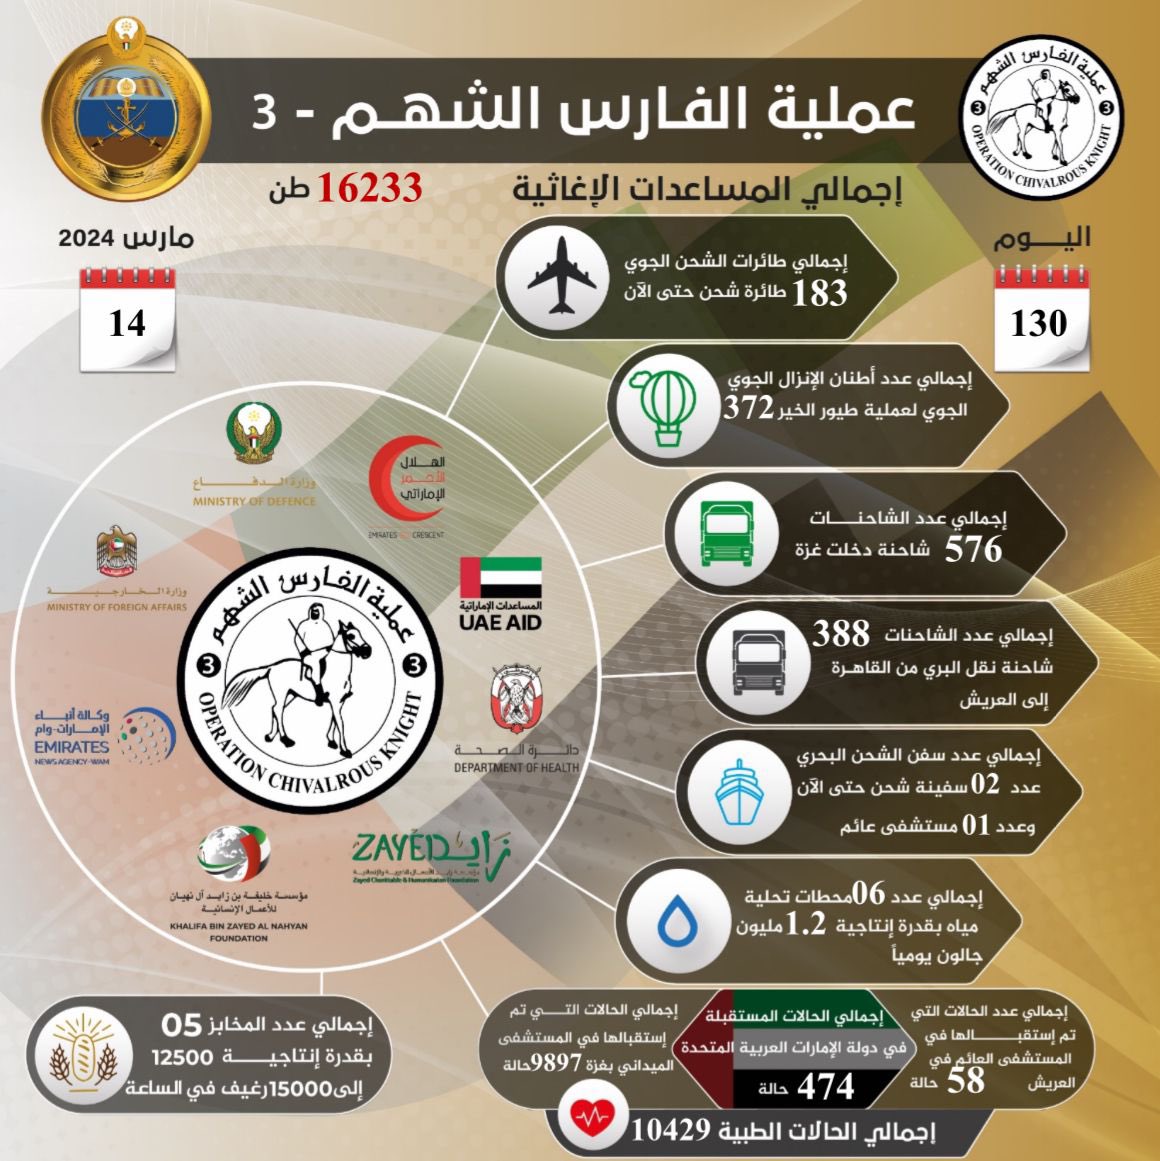 «الفارس الشهم 3» تواصل إغاثة الشعب الفلسطيني في غزة بـ 183 طائرة لليوم الـ 130